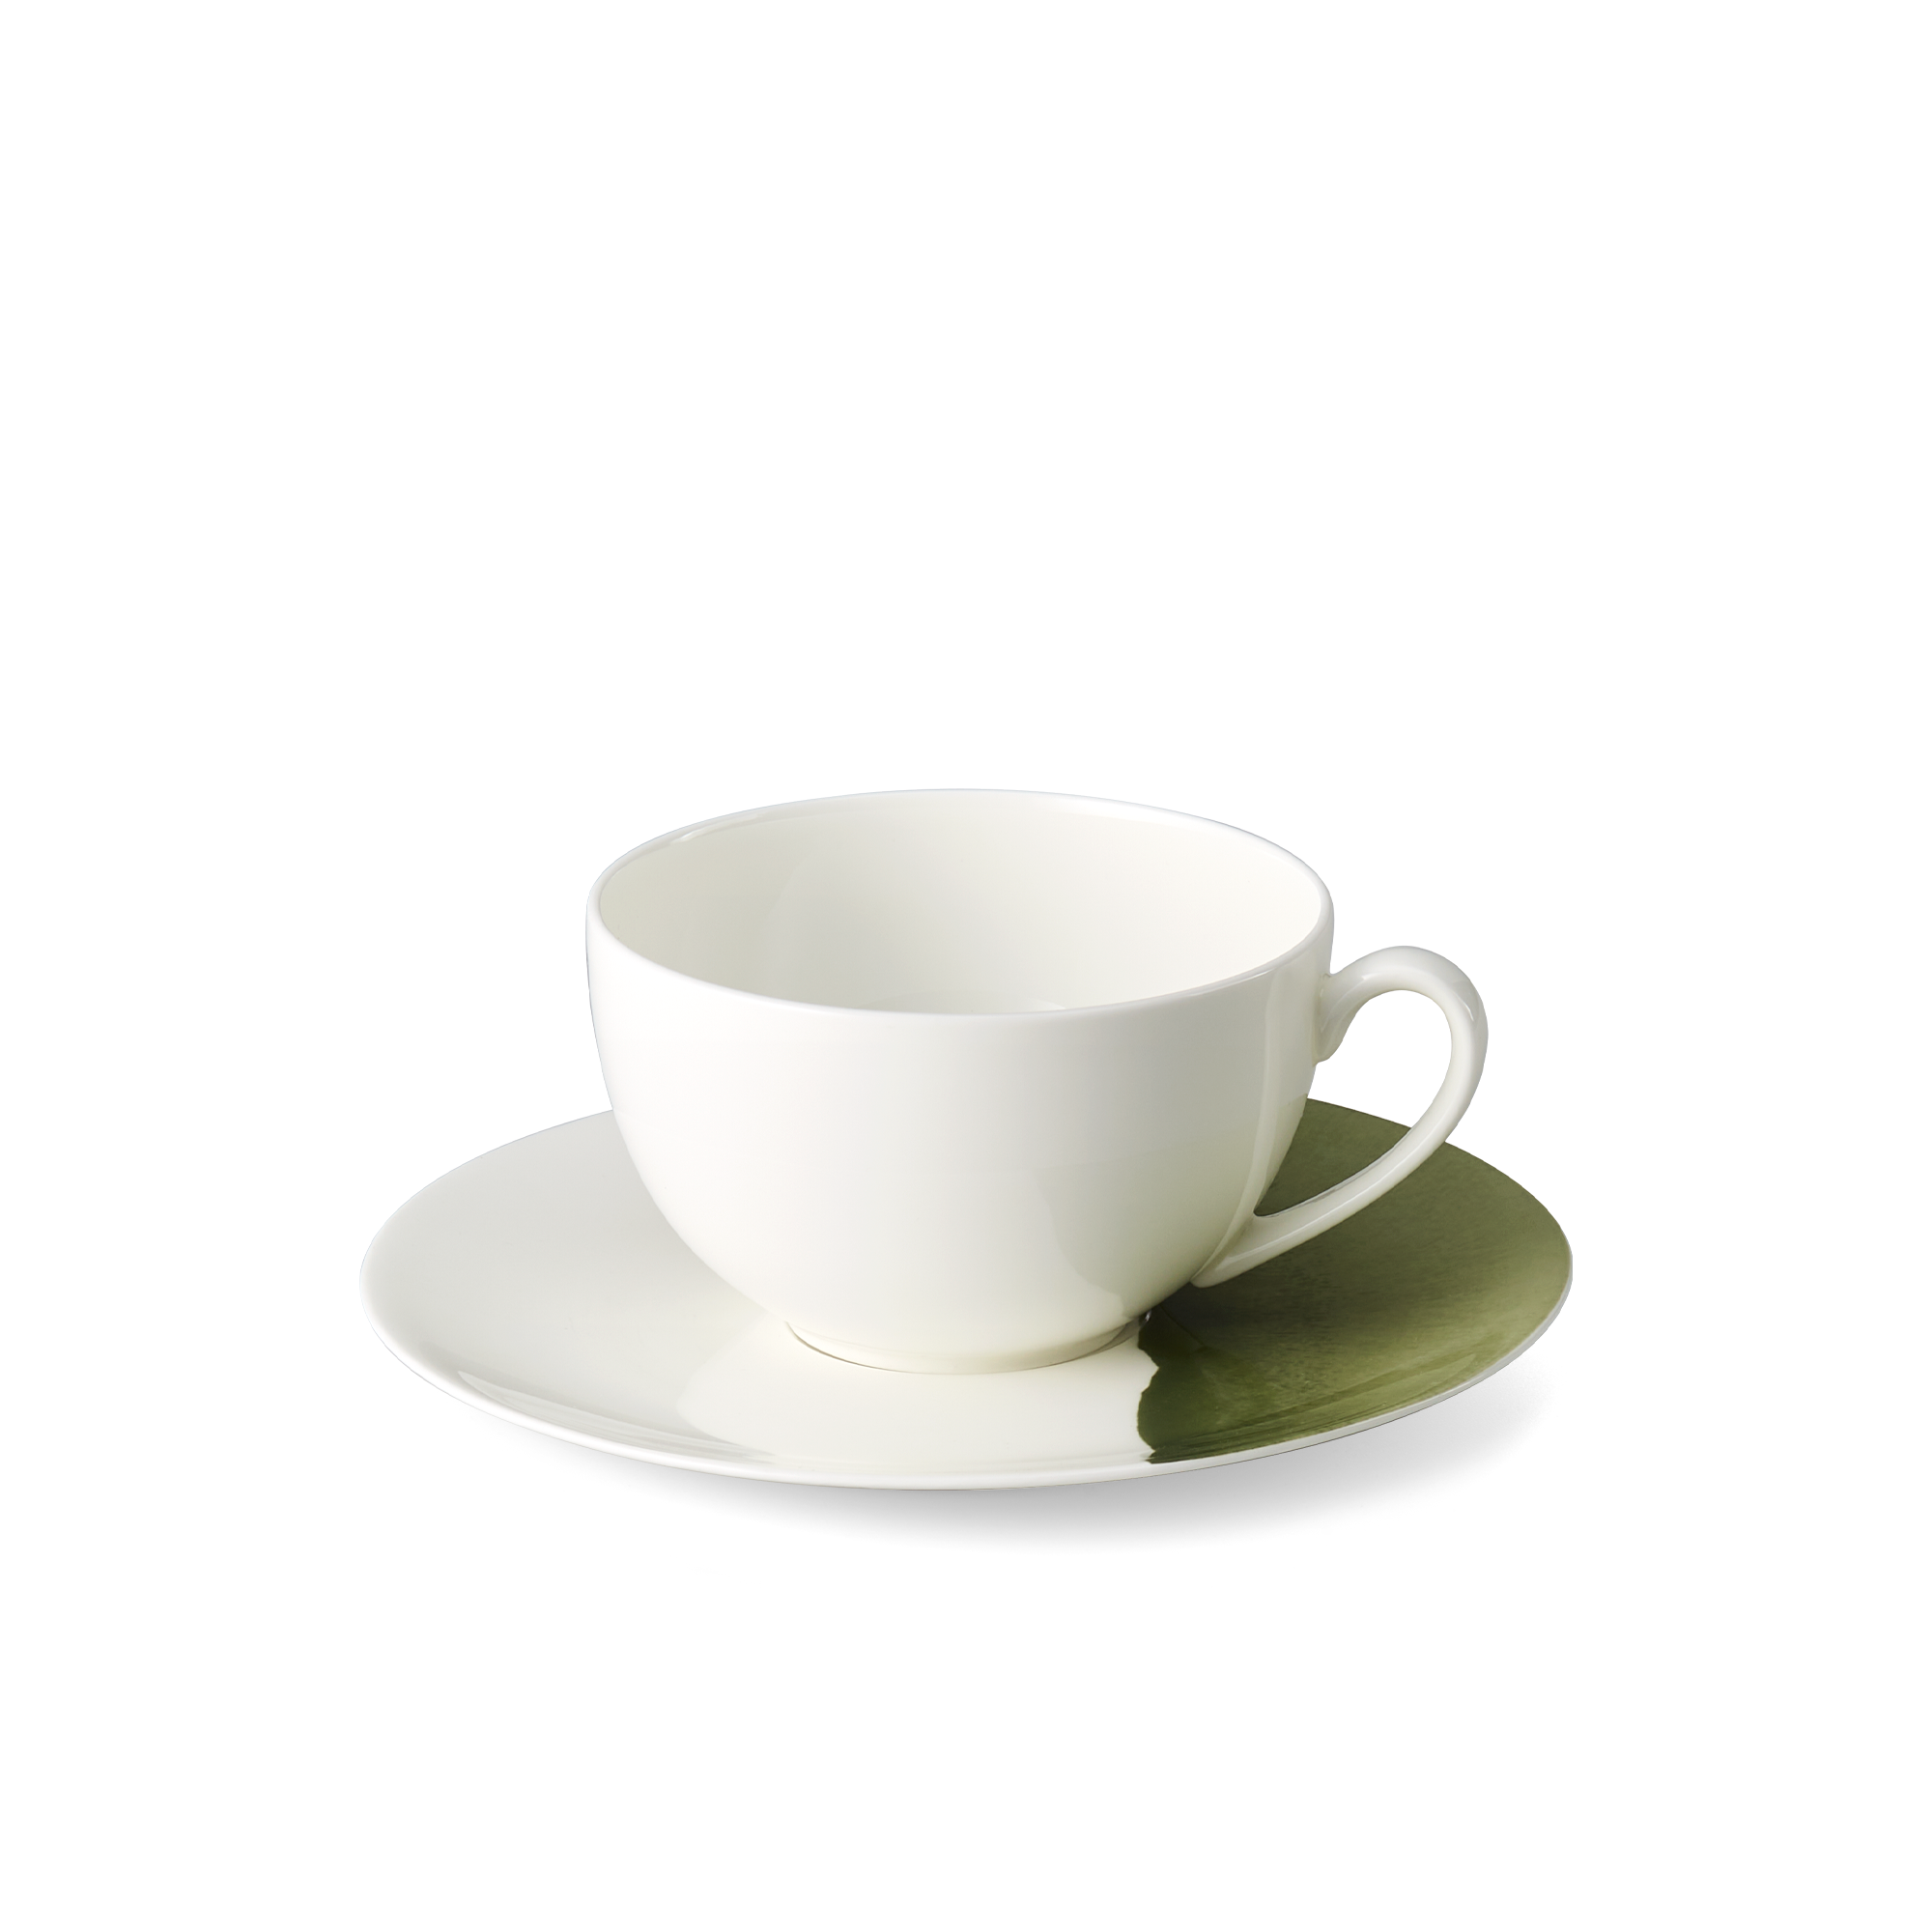 Coffee mug Silhouette Khaki